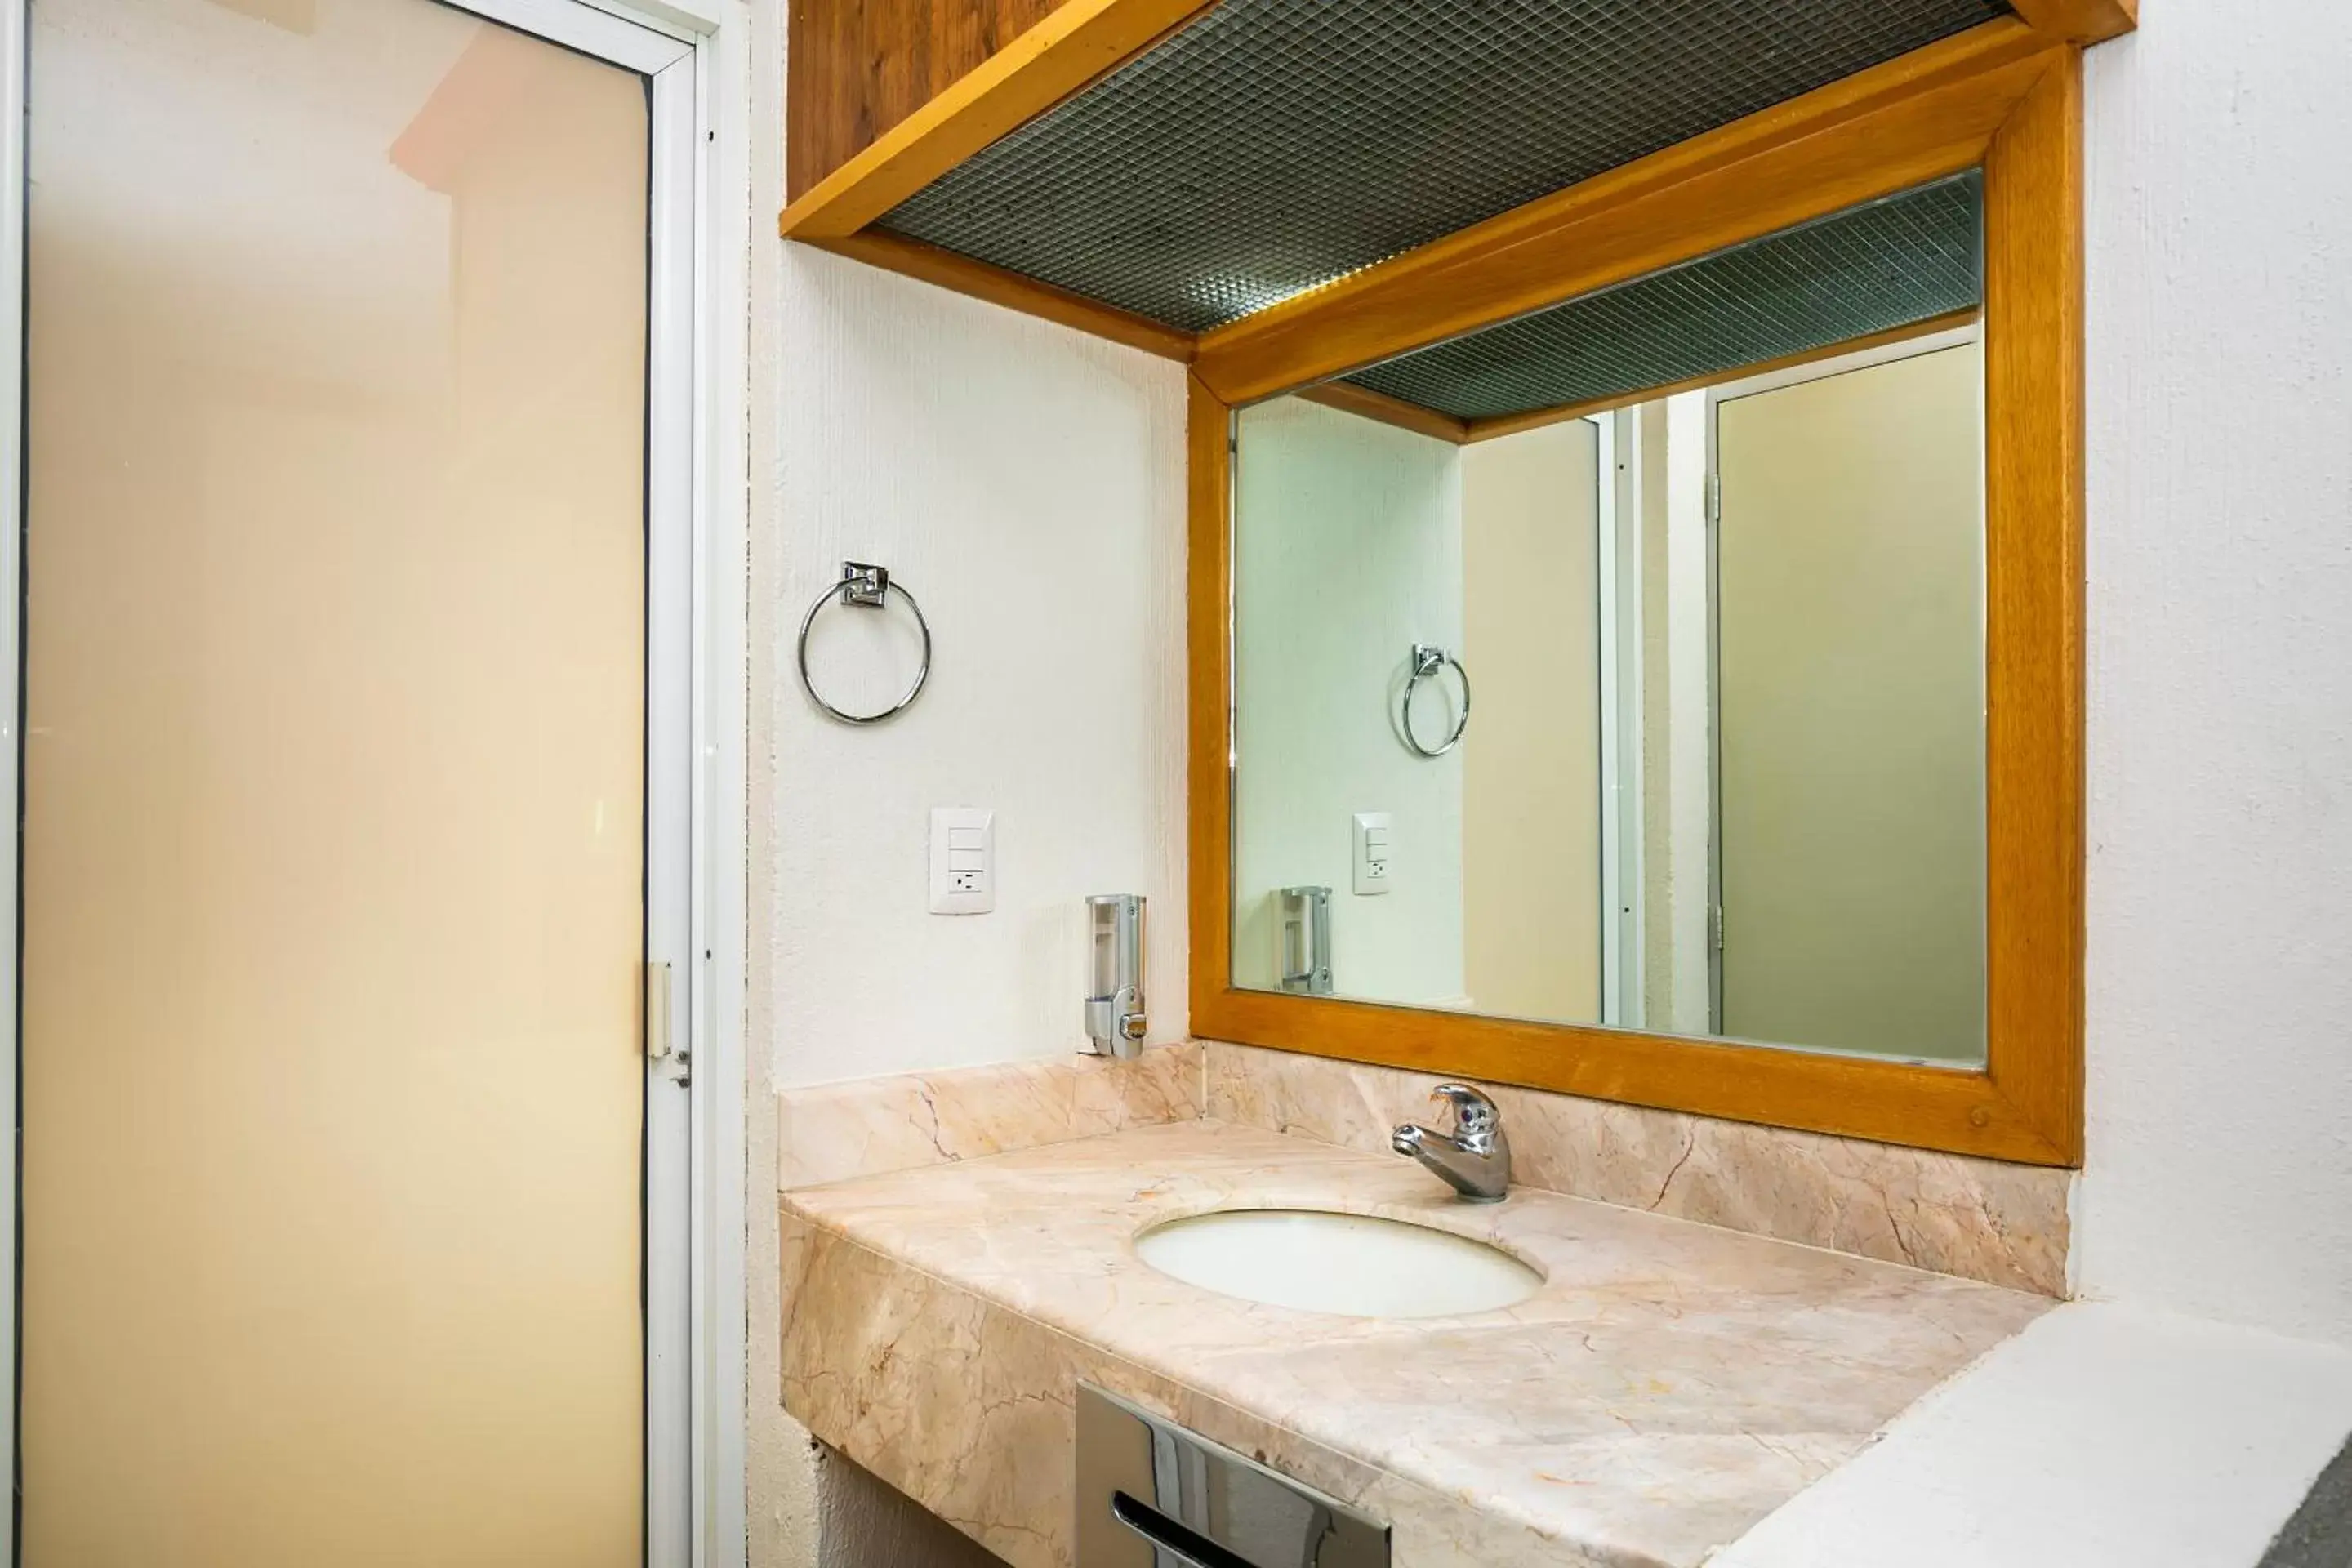 Area and facilities, Bathroom in Capital O Hotel Casa Blanca, Morelia